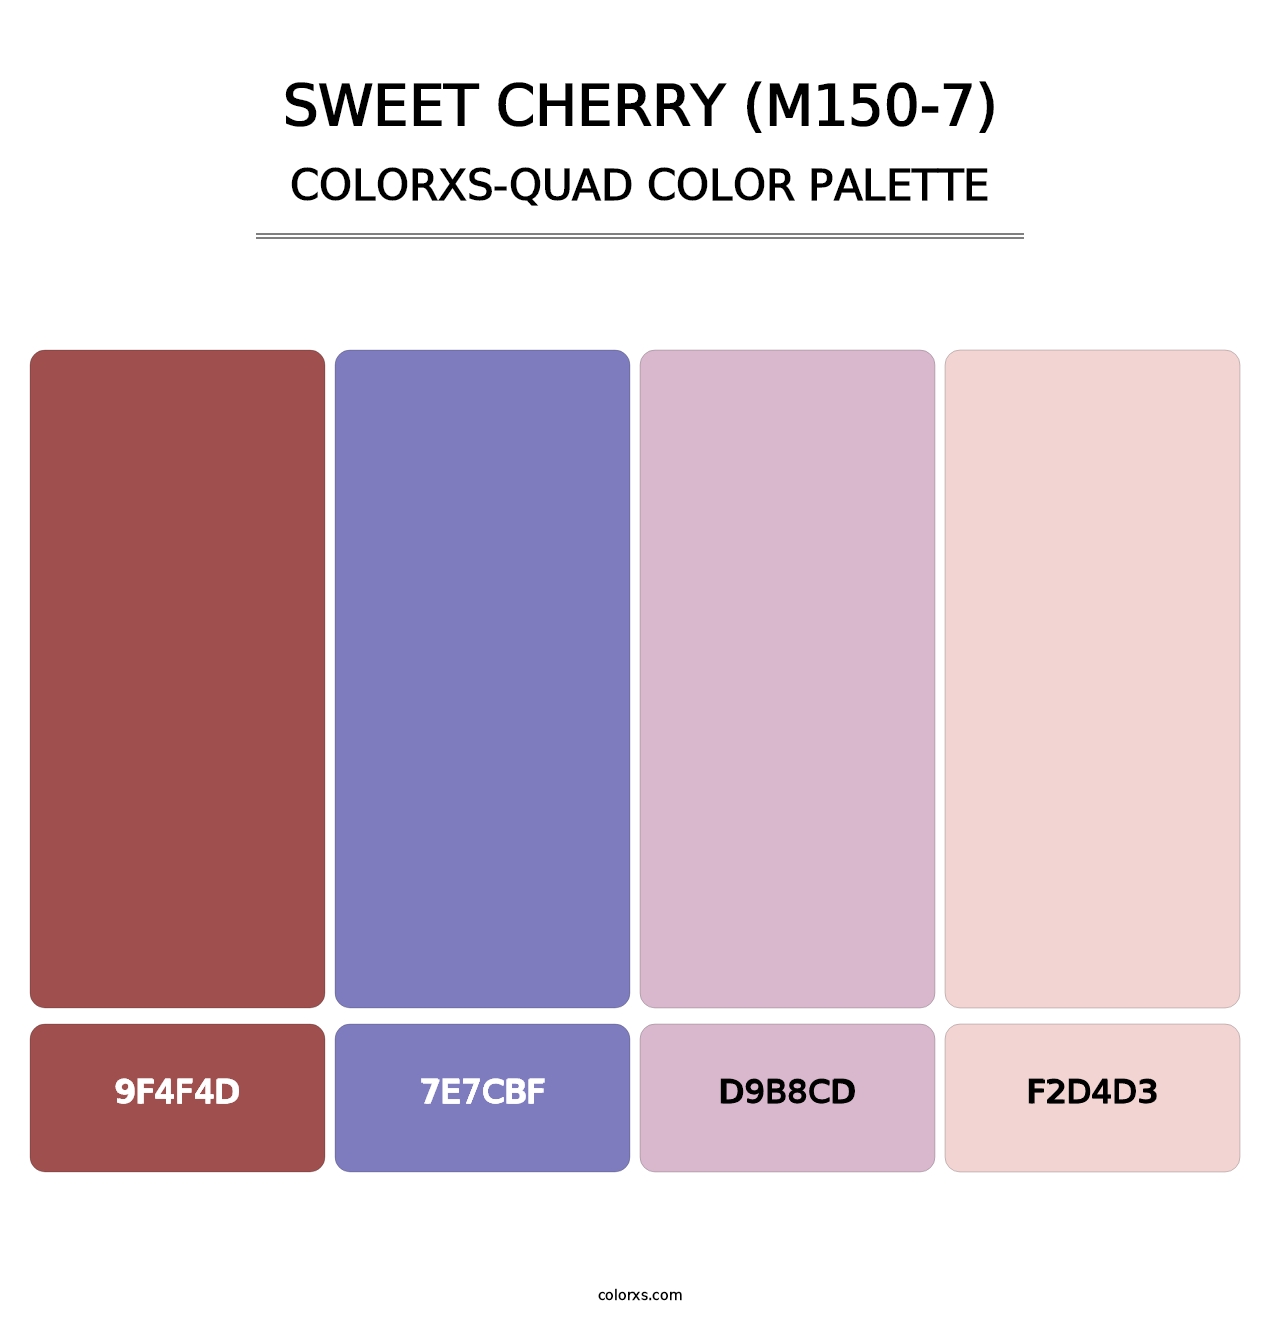 Sweet Cherry (M150-7) - Colorxs Quad Palette